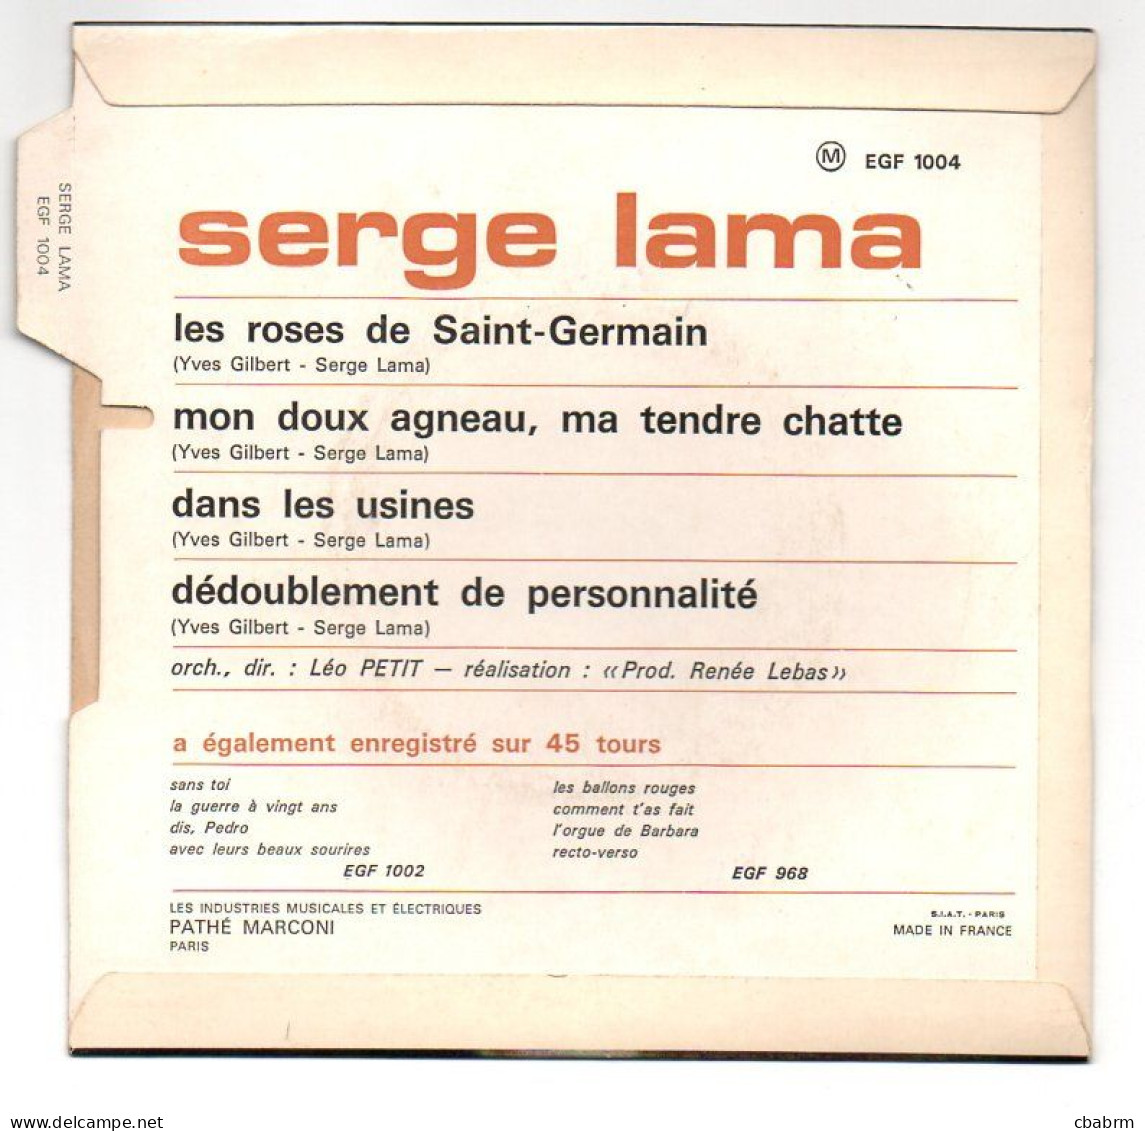 EP 45 TOURS SERGE LAMA LES ROSES DE SAINT-GERMAIN 1967 FRANCE EGF 1004 LANGUETTE - Other - French Music